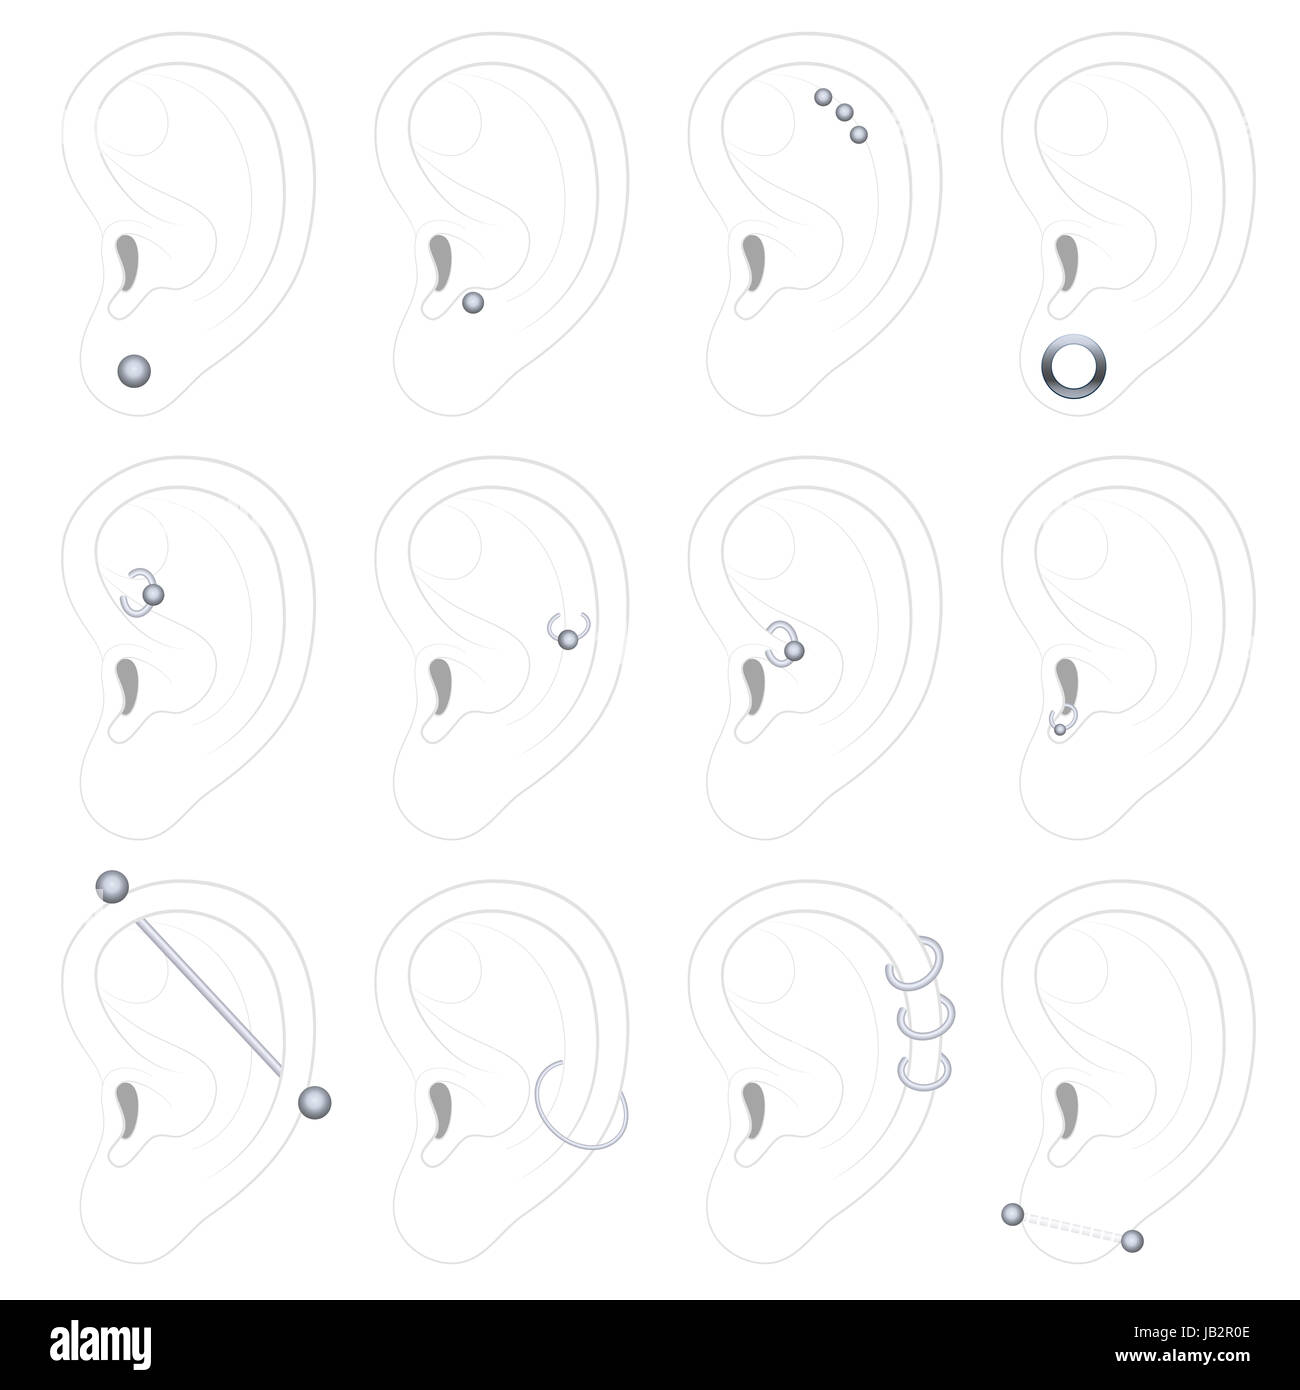 Le perçage des oreilles exemples - douze types différents - illustration sur fond blanc. Banque D'Images